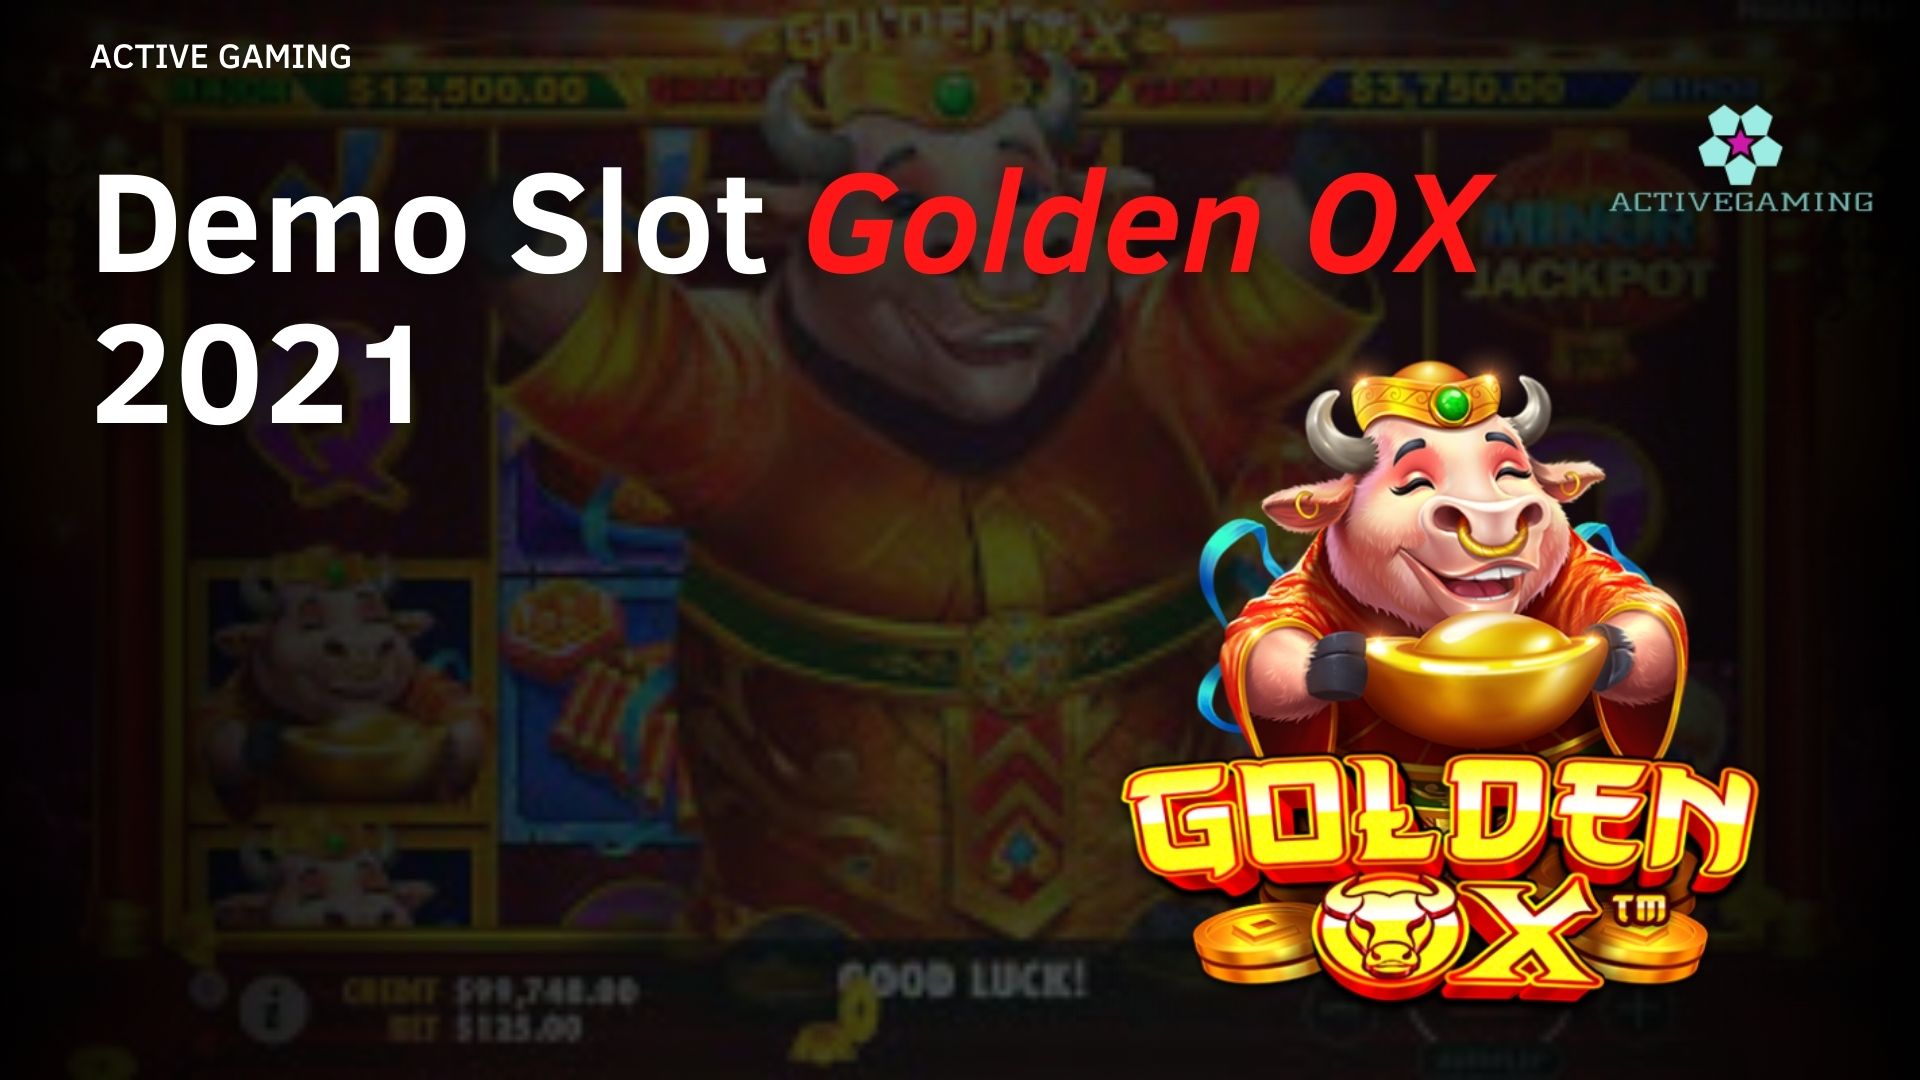 Demo Slot Golden OX 2021